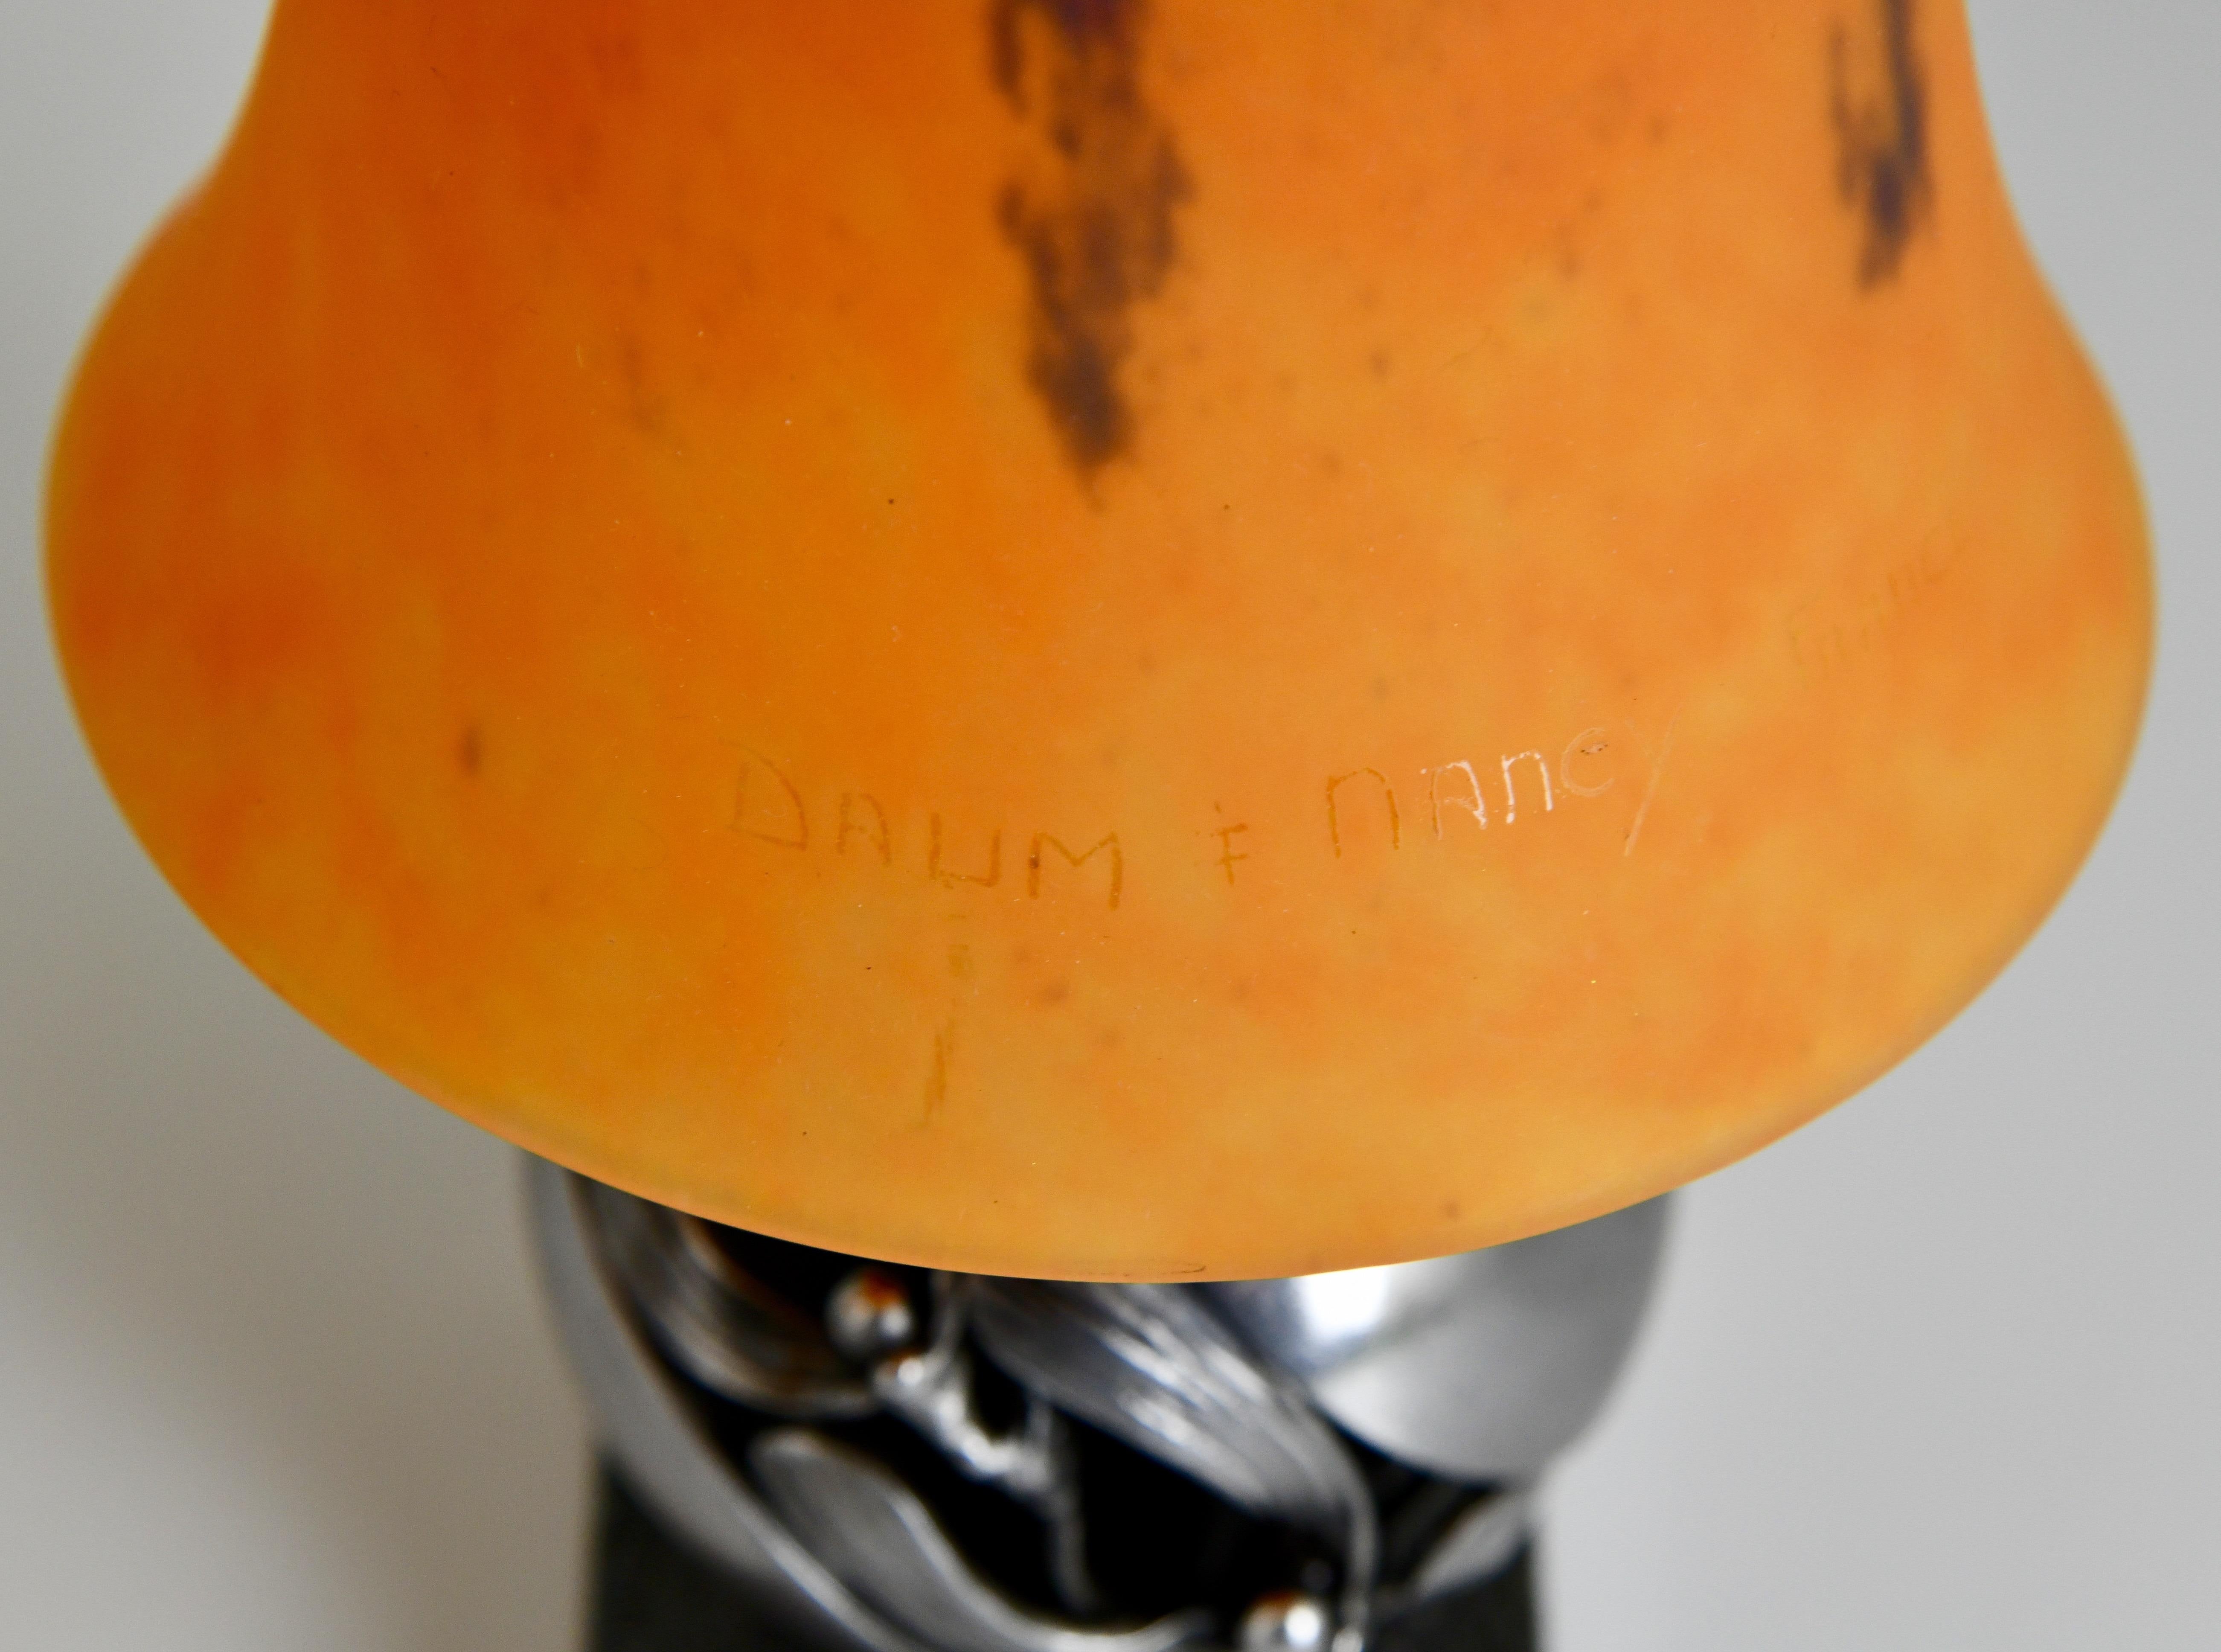 Pair of Mistletoe Boule de Gui Art Deco table lamps Edgar Brandt and Daum 1925 For Sale 4